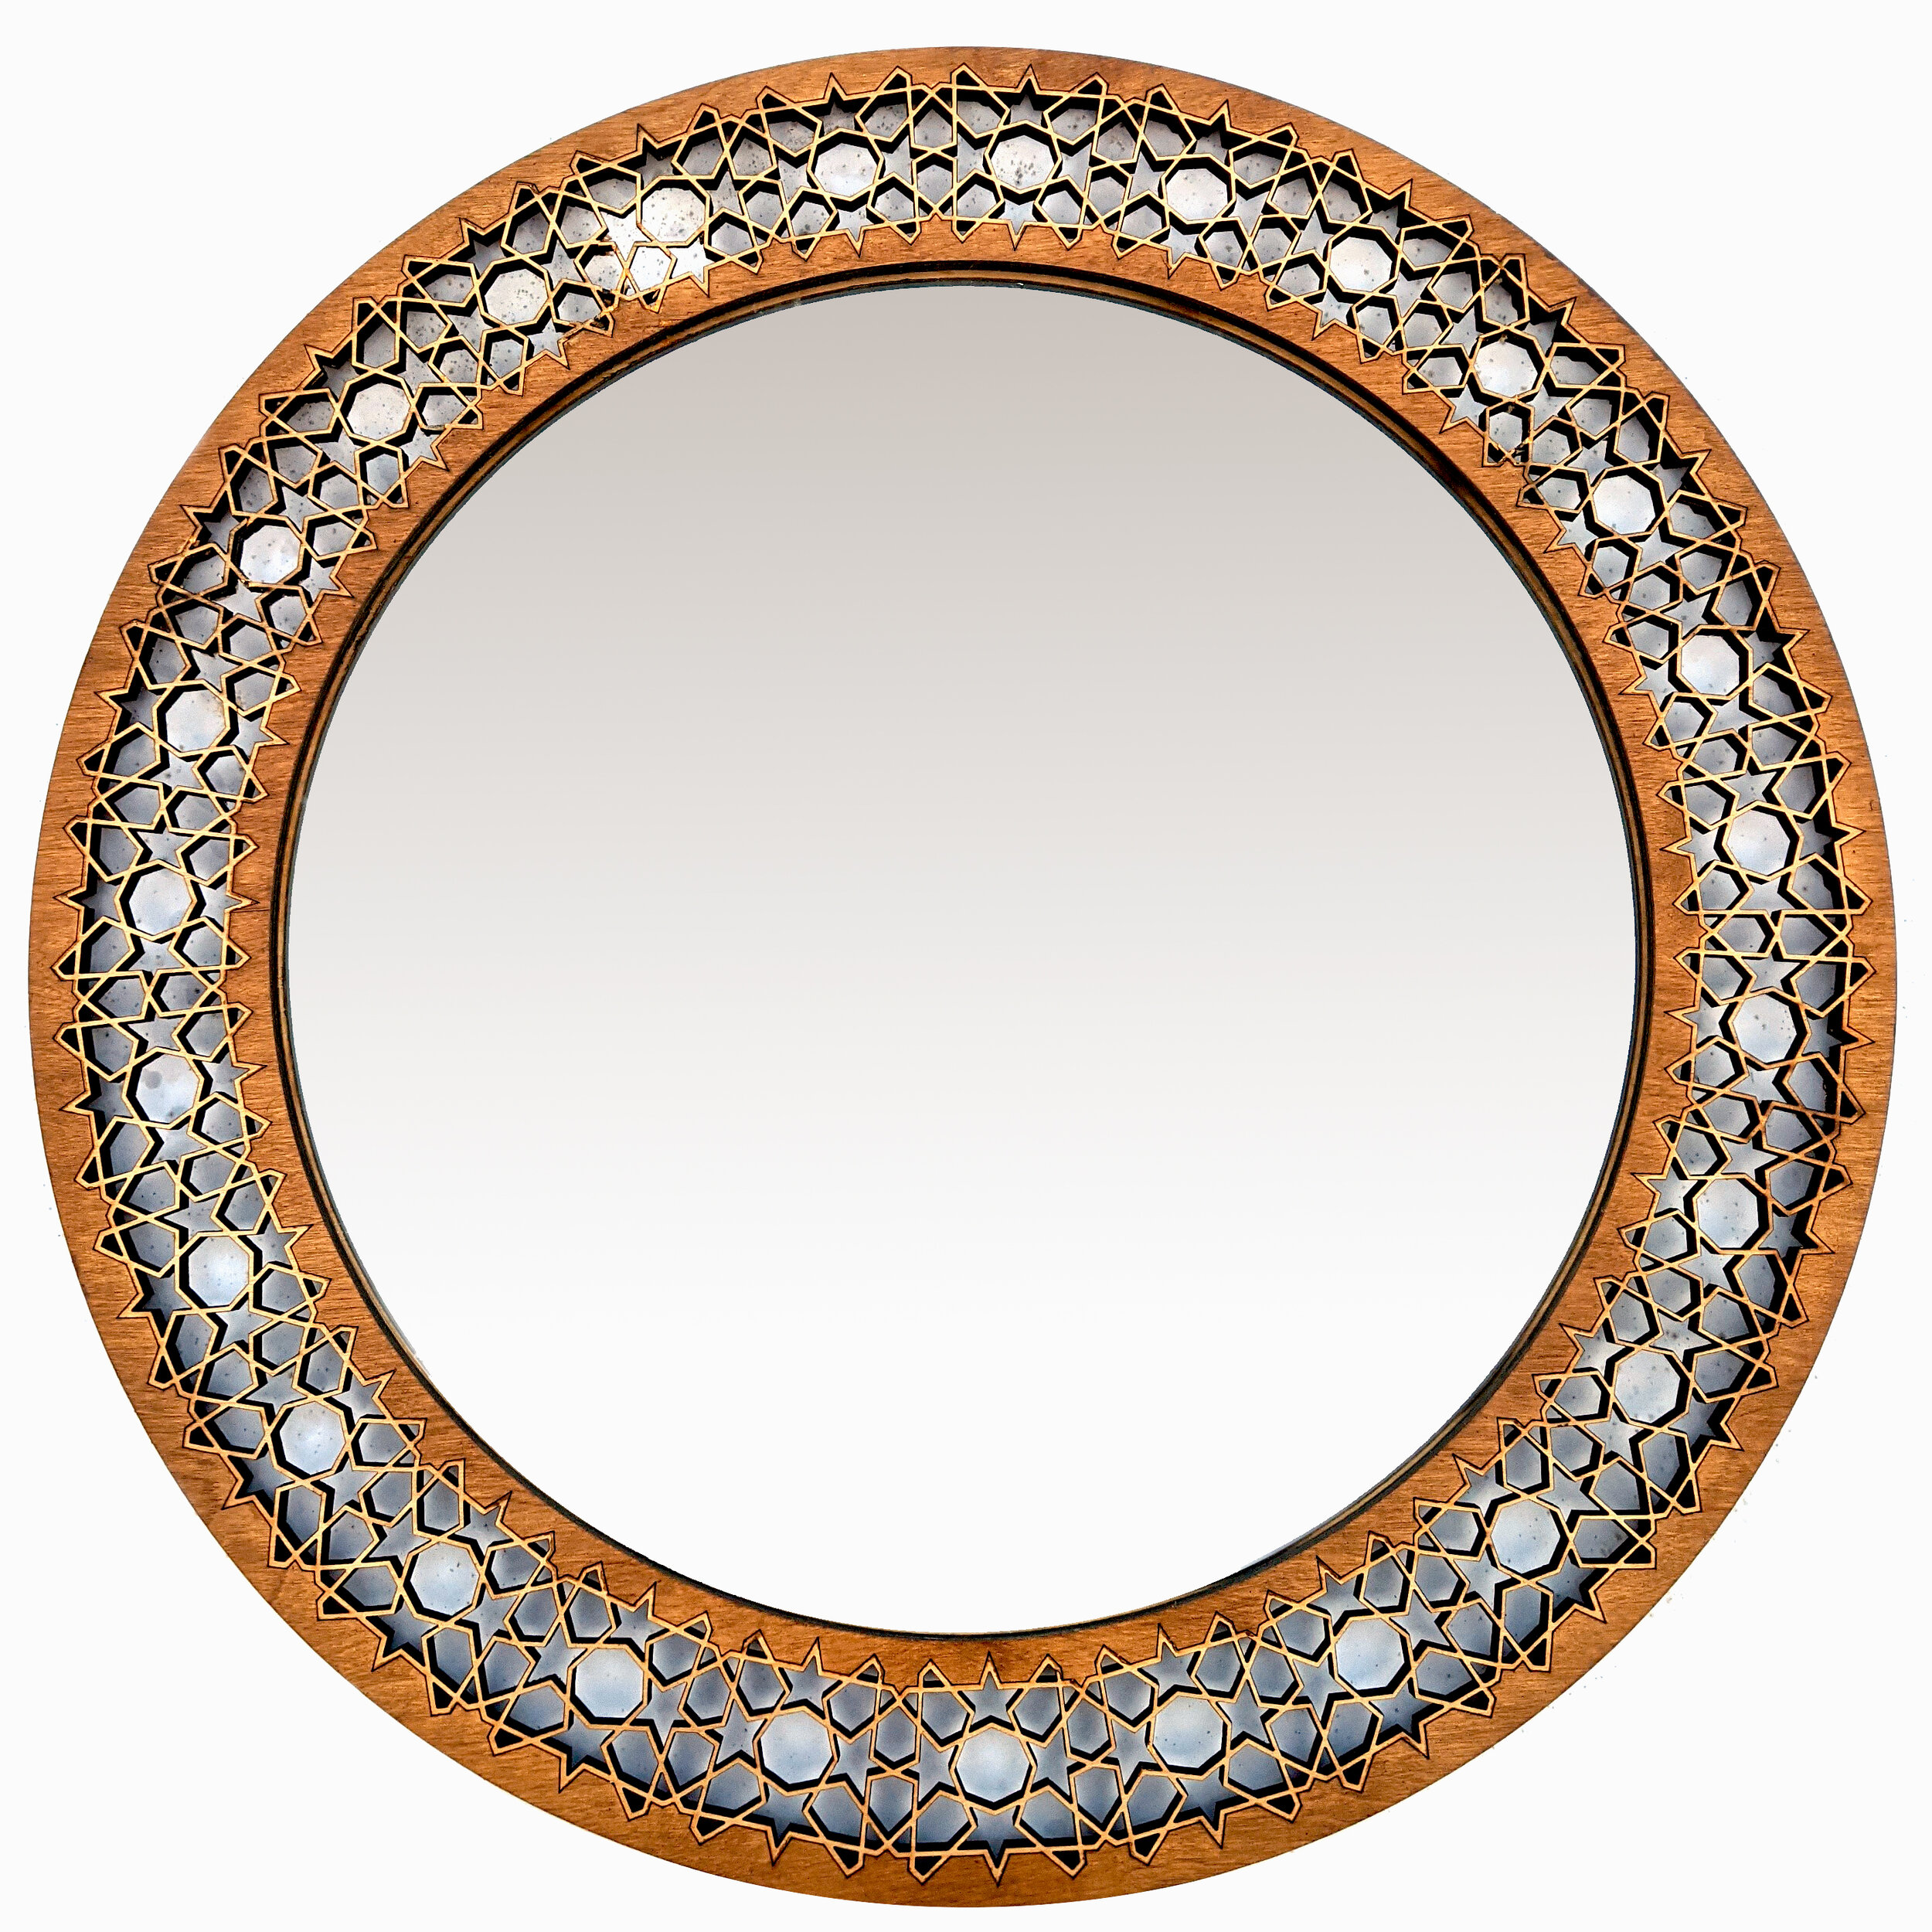 Round wooden mirror frames by Surrey Woodsmiths.jpg